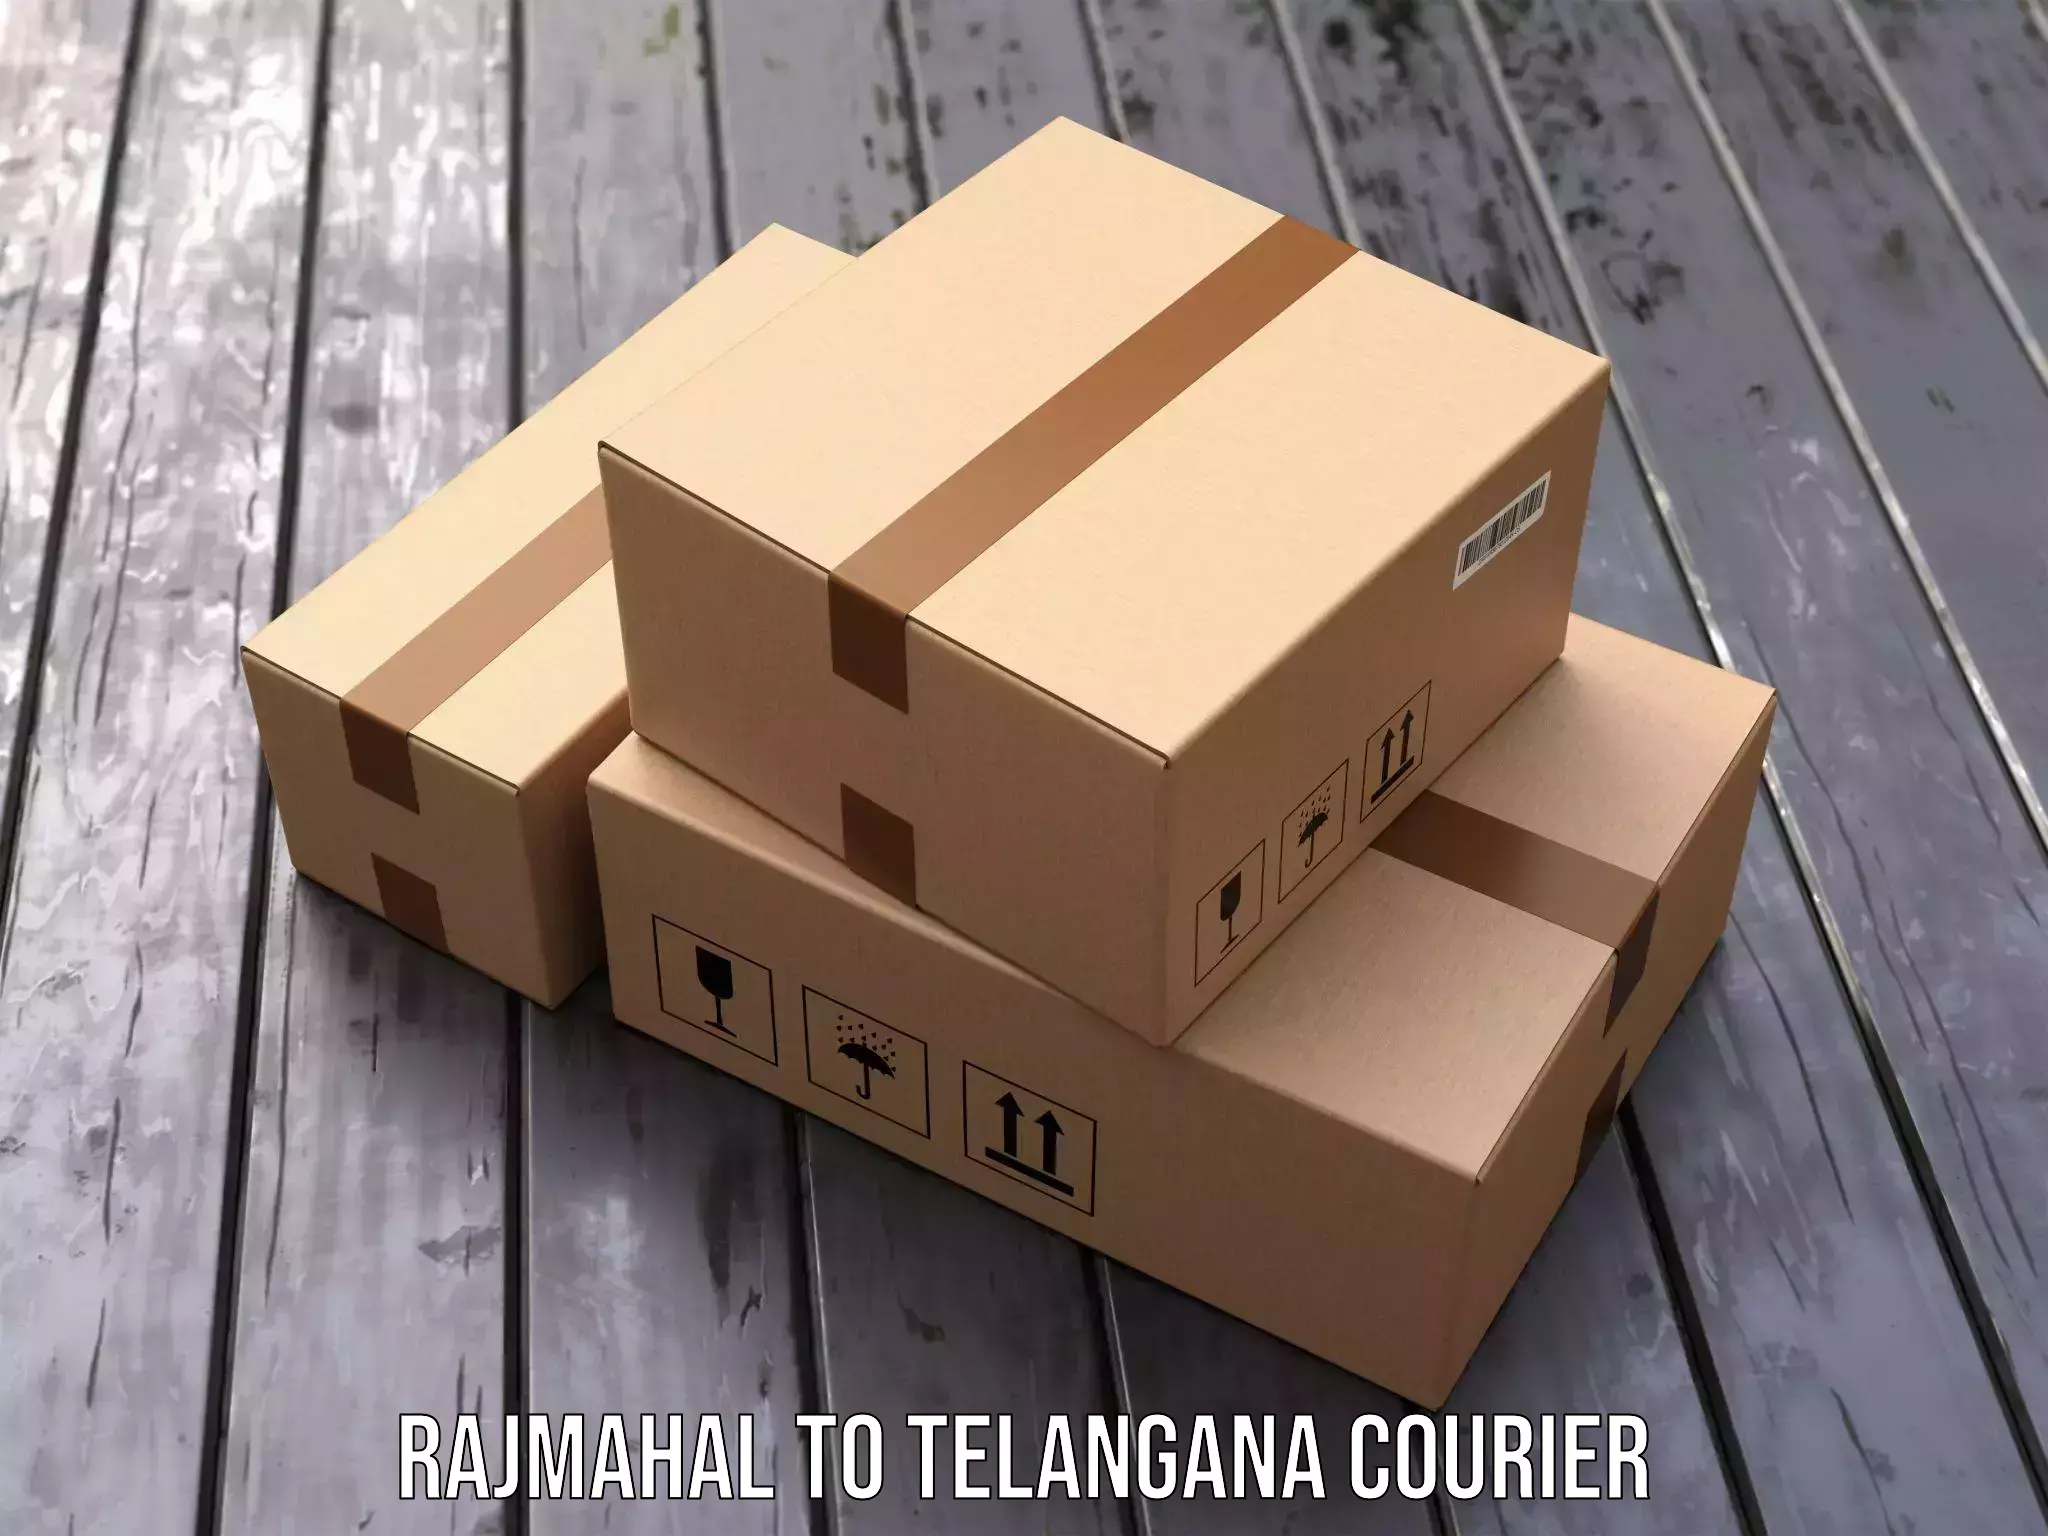 User-friendly courier app Rajmahal to Nalgonda